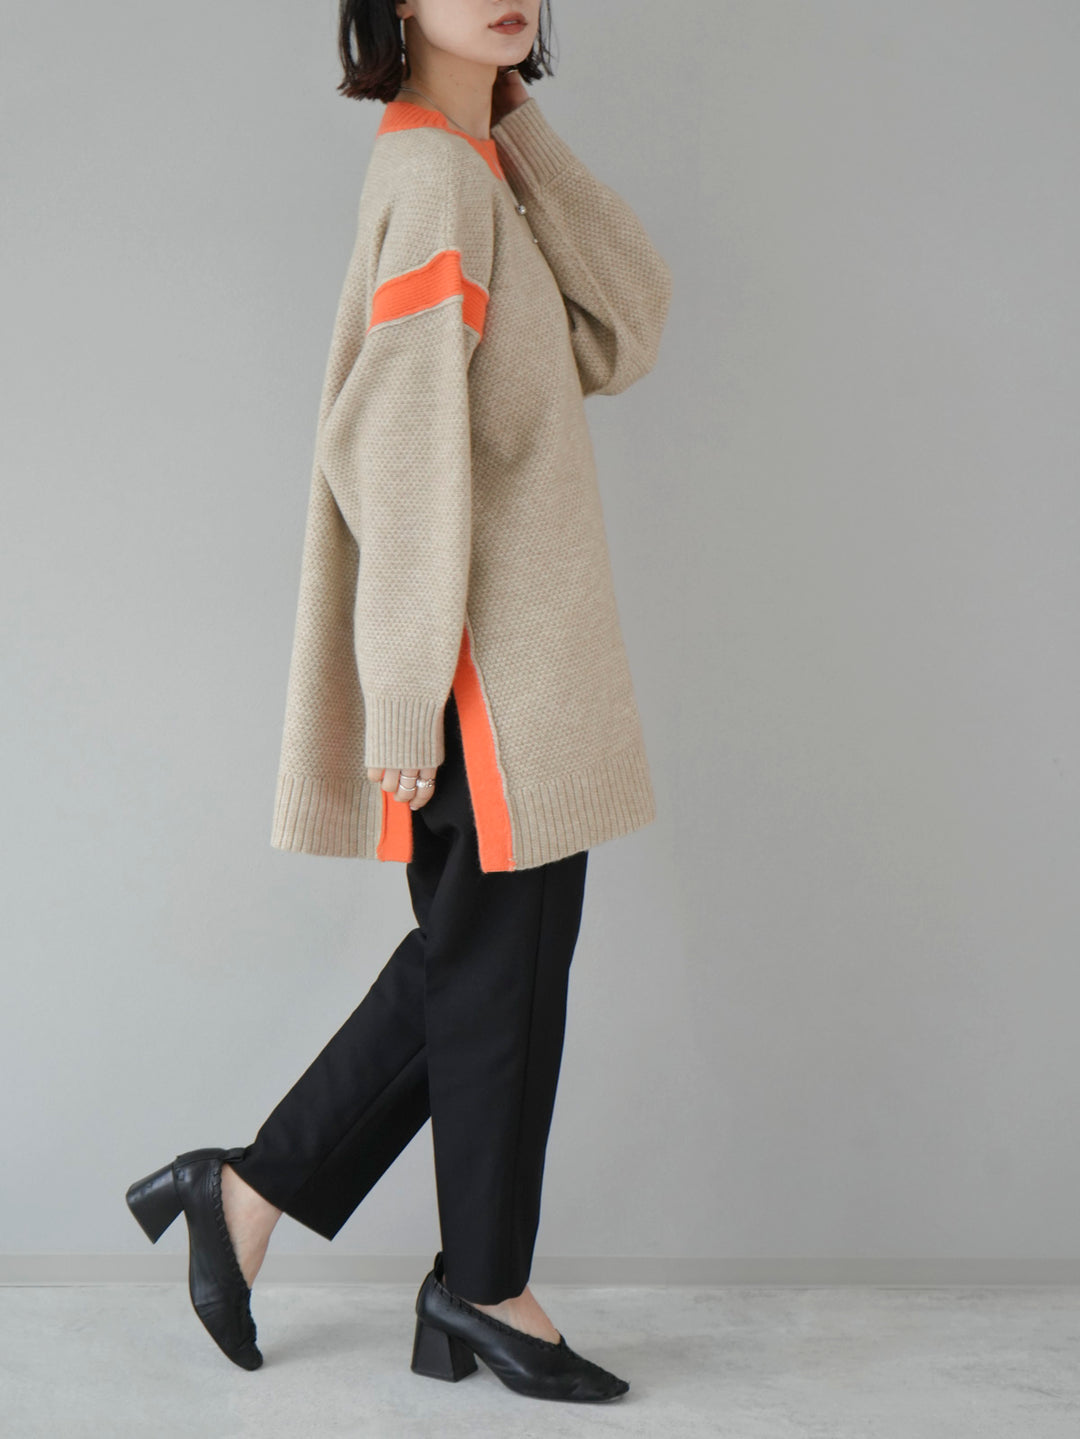 [Pre-order] Side slit bicolor over knit/beige